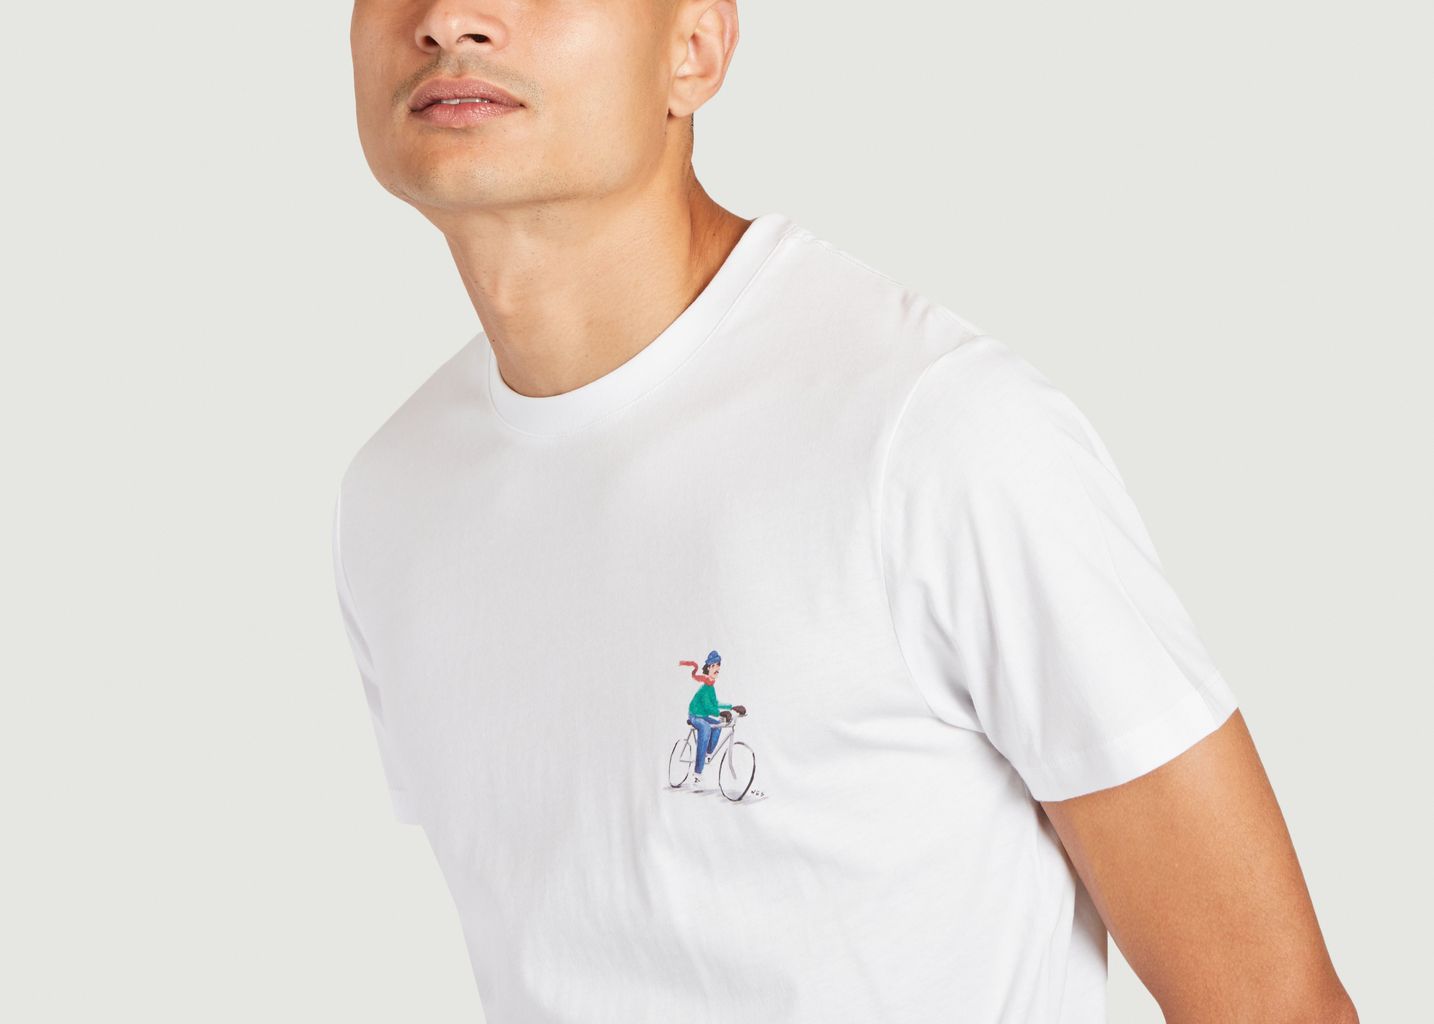 Arcy Radfahrer und Berge gedruckt t-shirt - Faguo